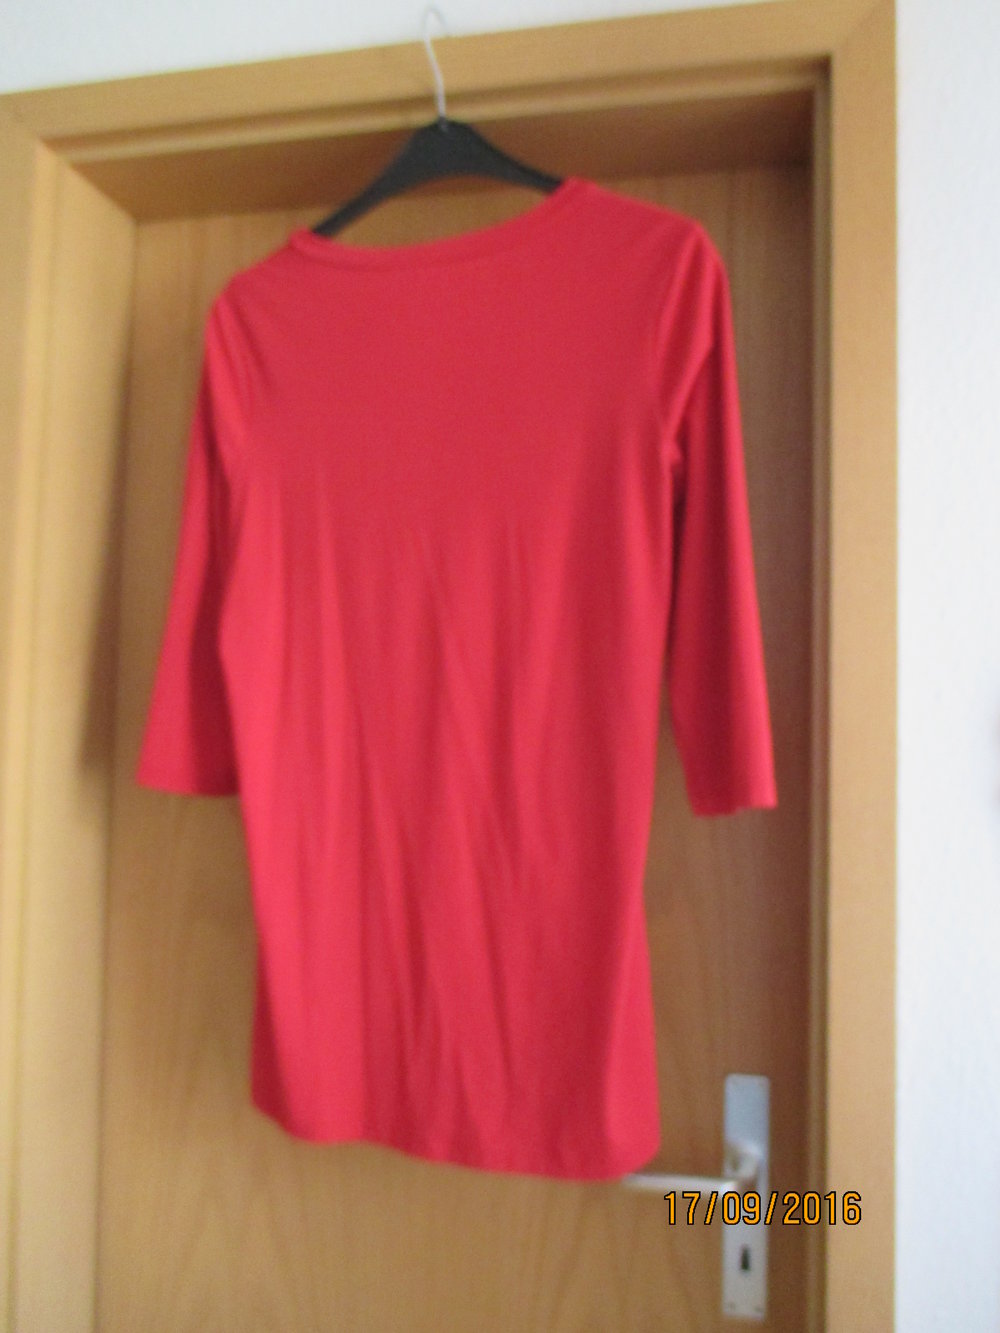 sehr schöne rote Tunika von Women's Selection